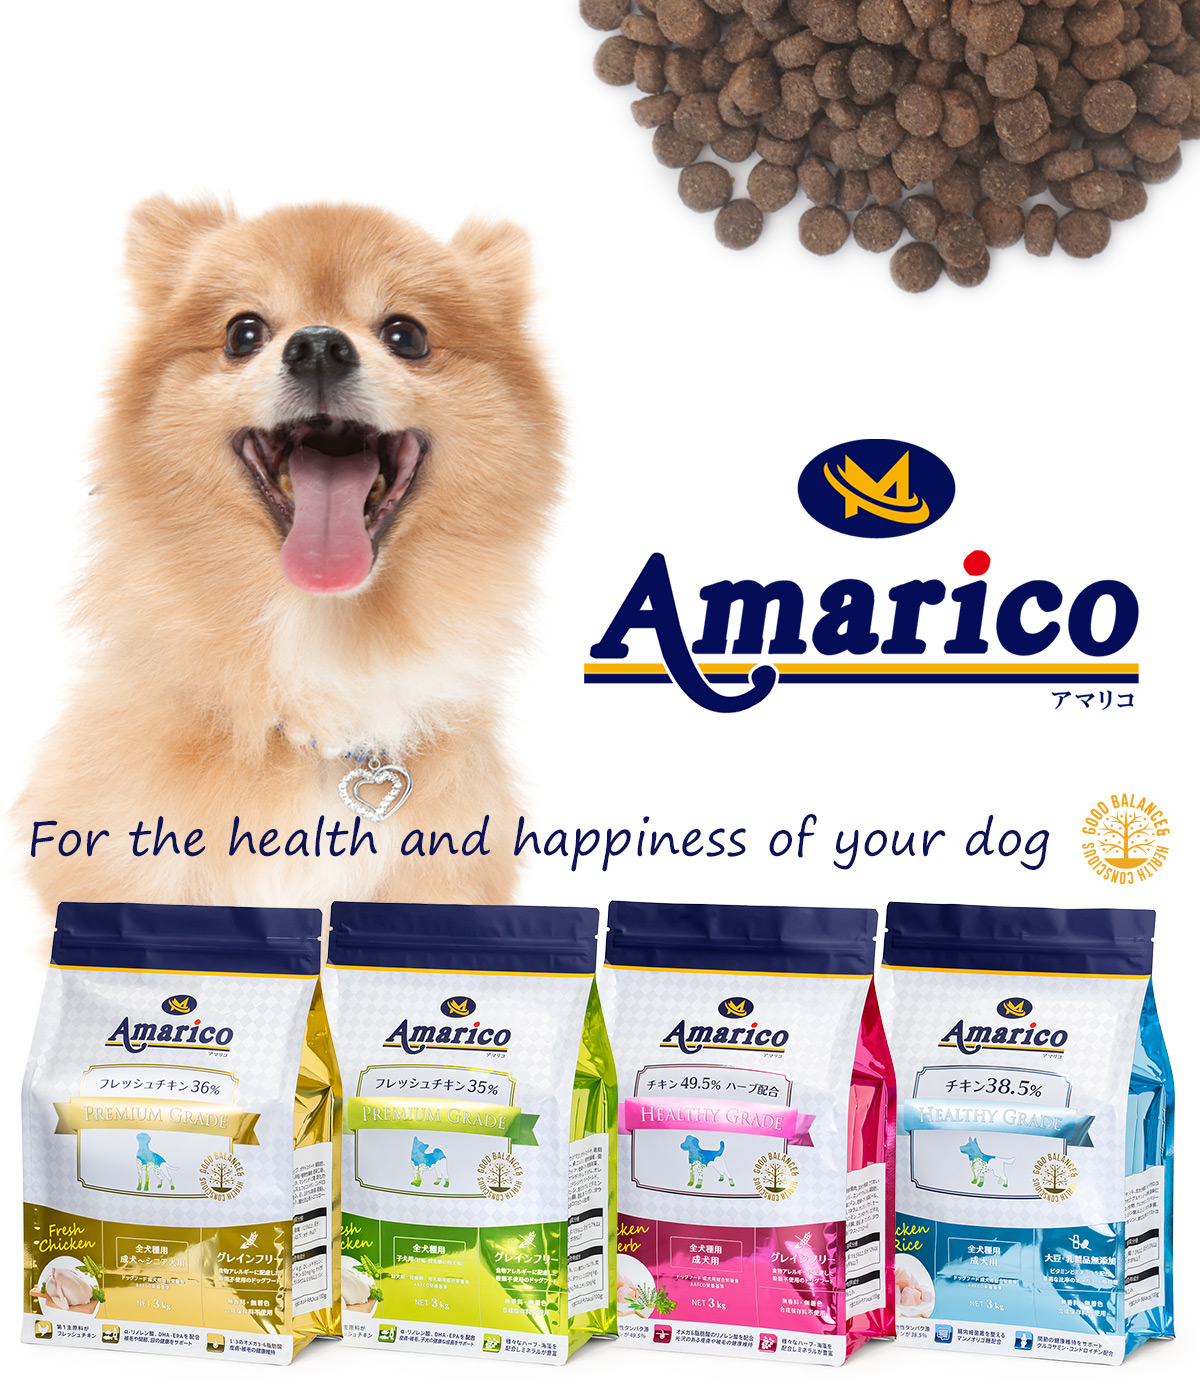 Amarico アマリコ ドッグフード 3kg 全4種類 フレッシュチキン・グレインフリー 全犬種 成犬～シニア犬用 子犬用